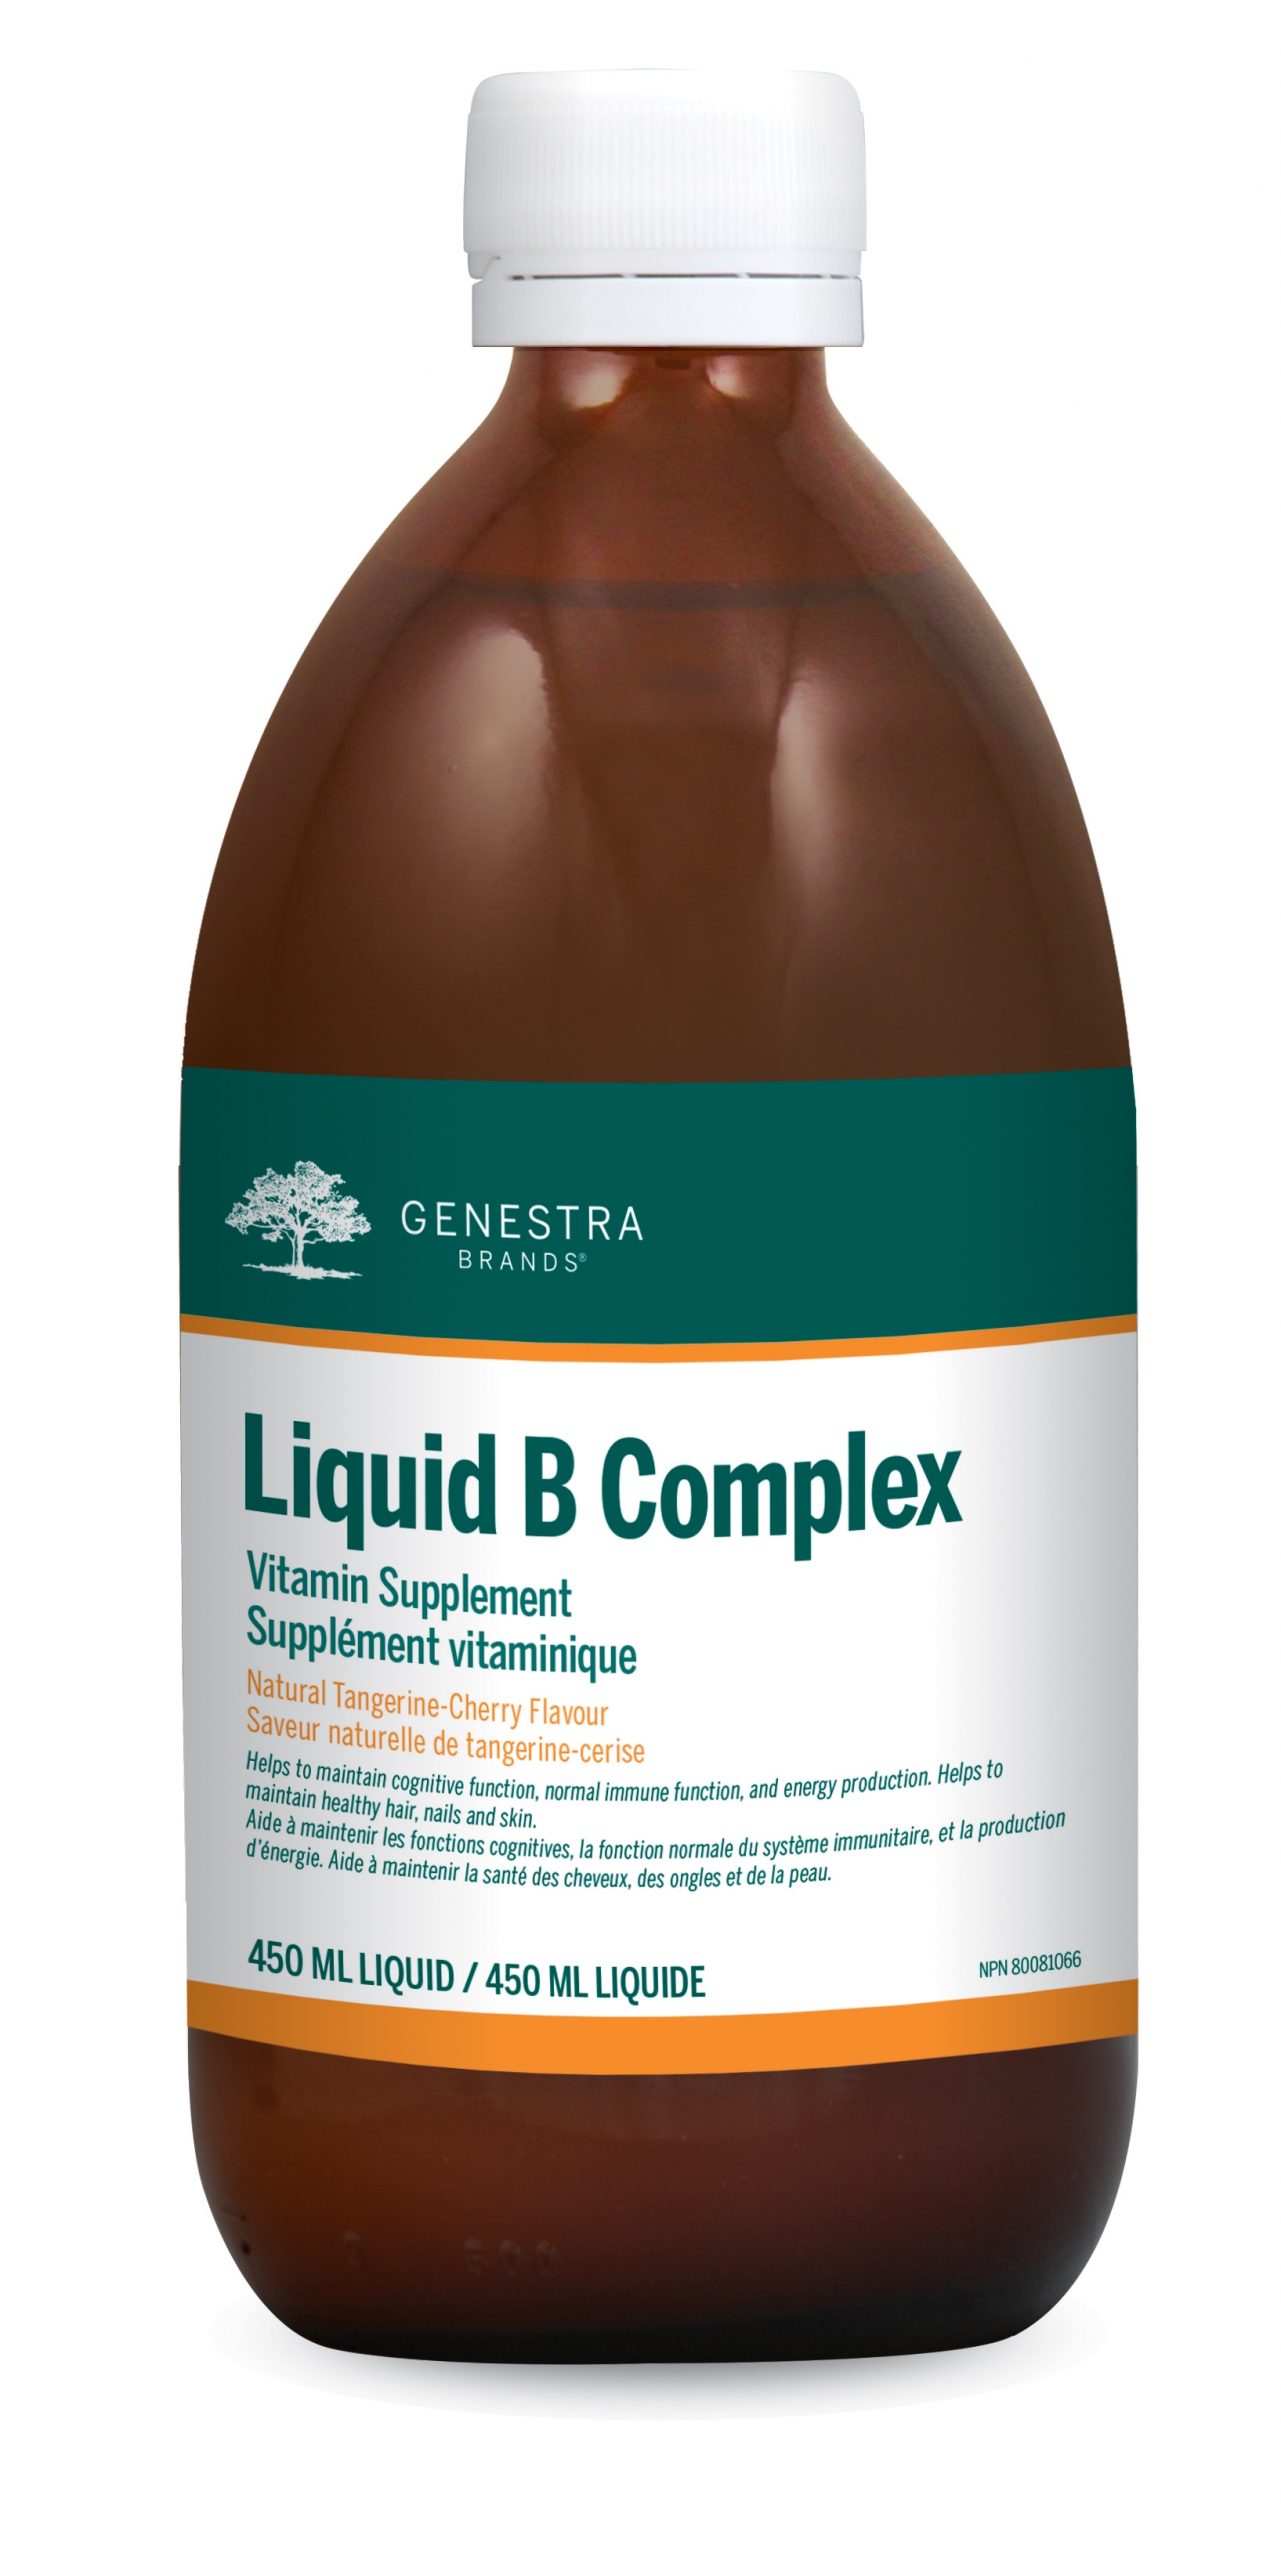 131a_liquid_b_complex_can